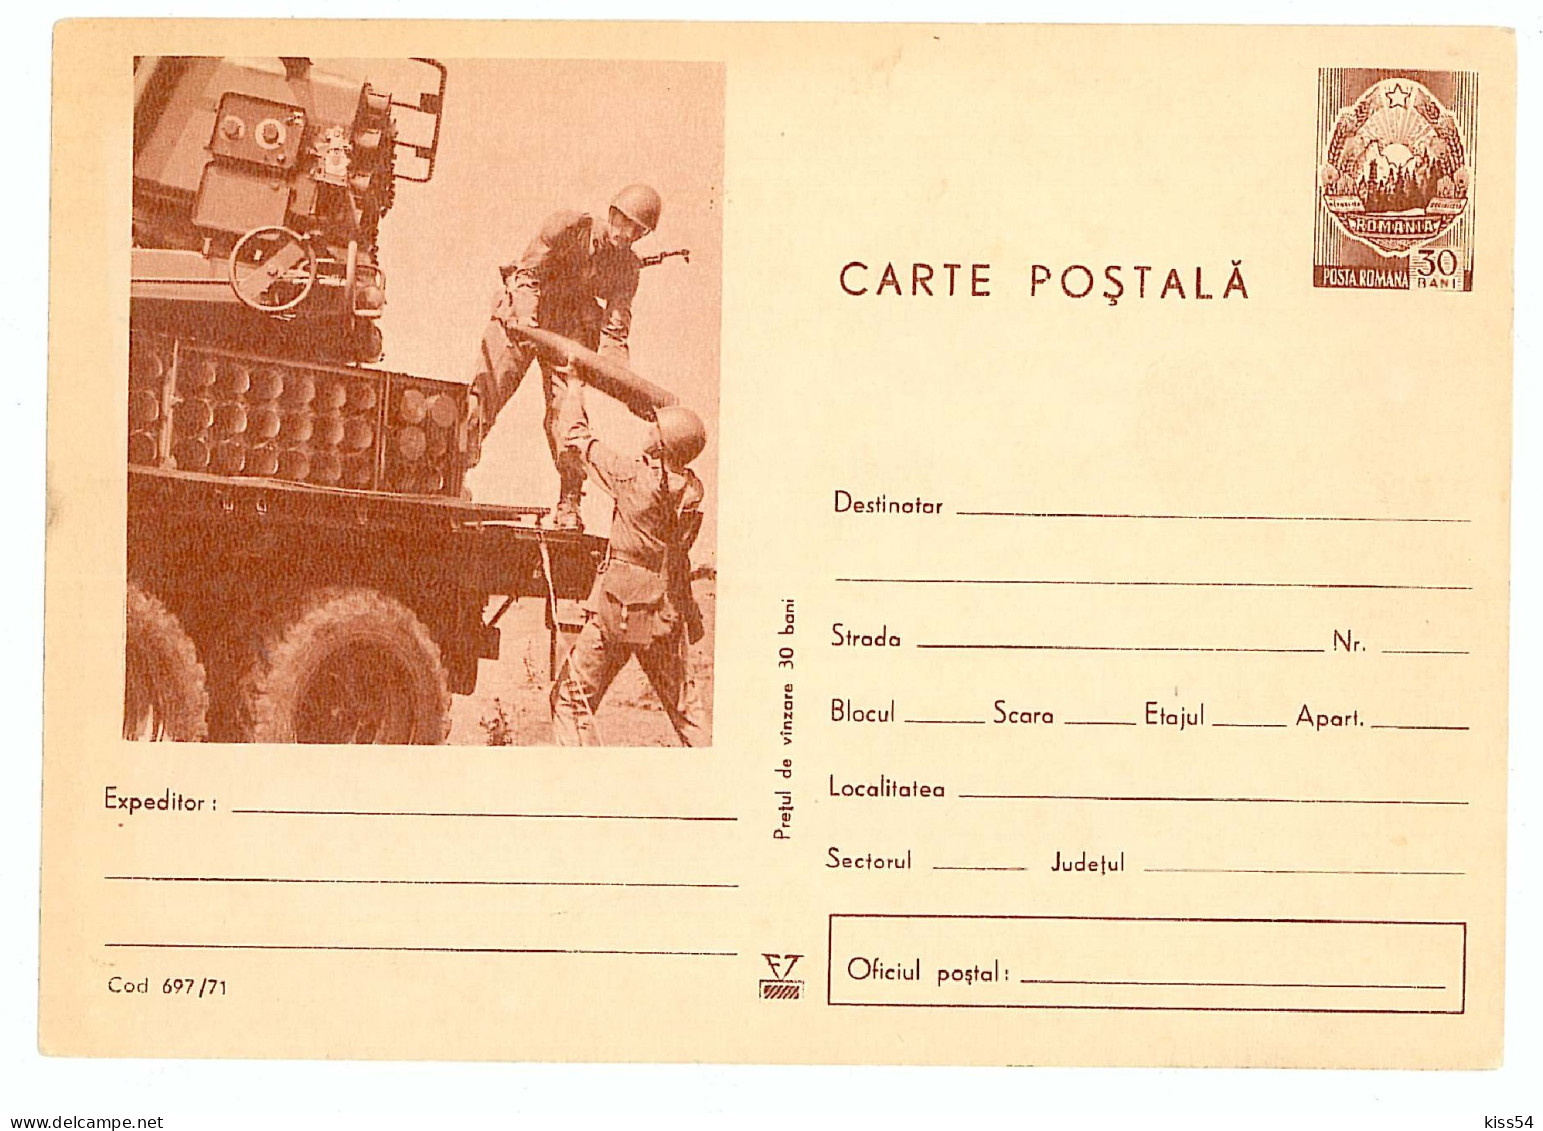 IP 71 - 697 Military - Stationery - Unused - 1971 - Postal Stationery